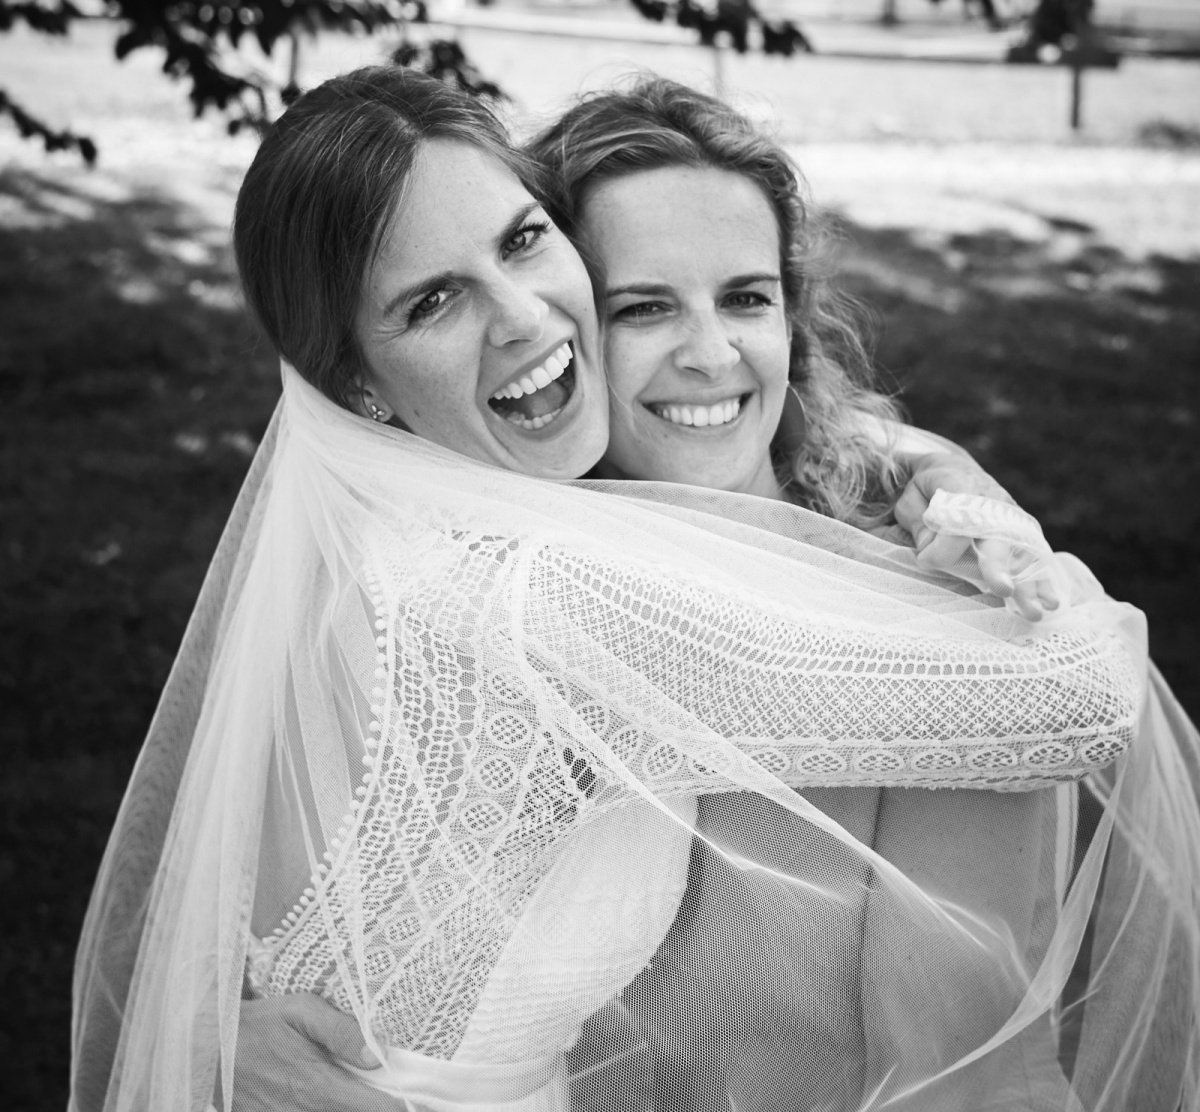 Ein emotionaler Wochenend-Trip: Meine kleine Schwester hat geheiratet!